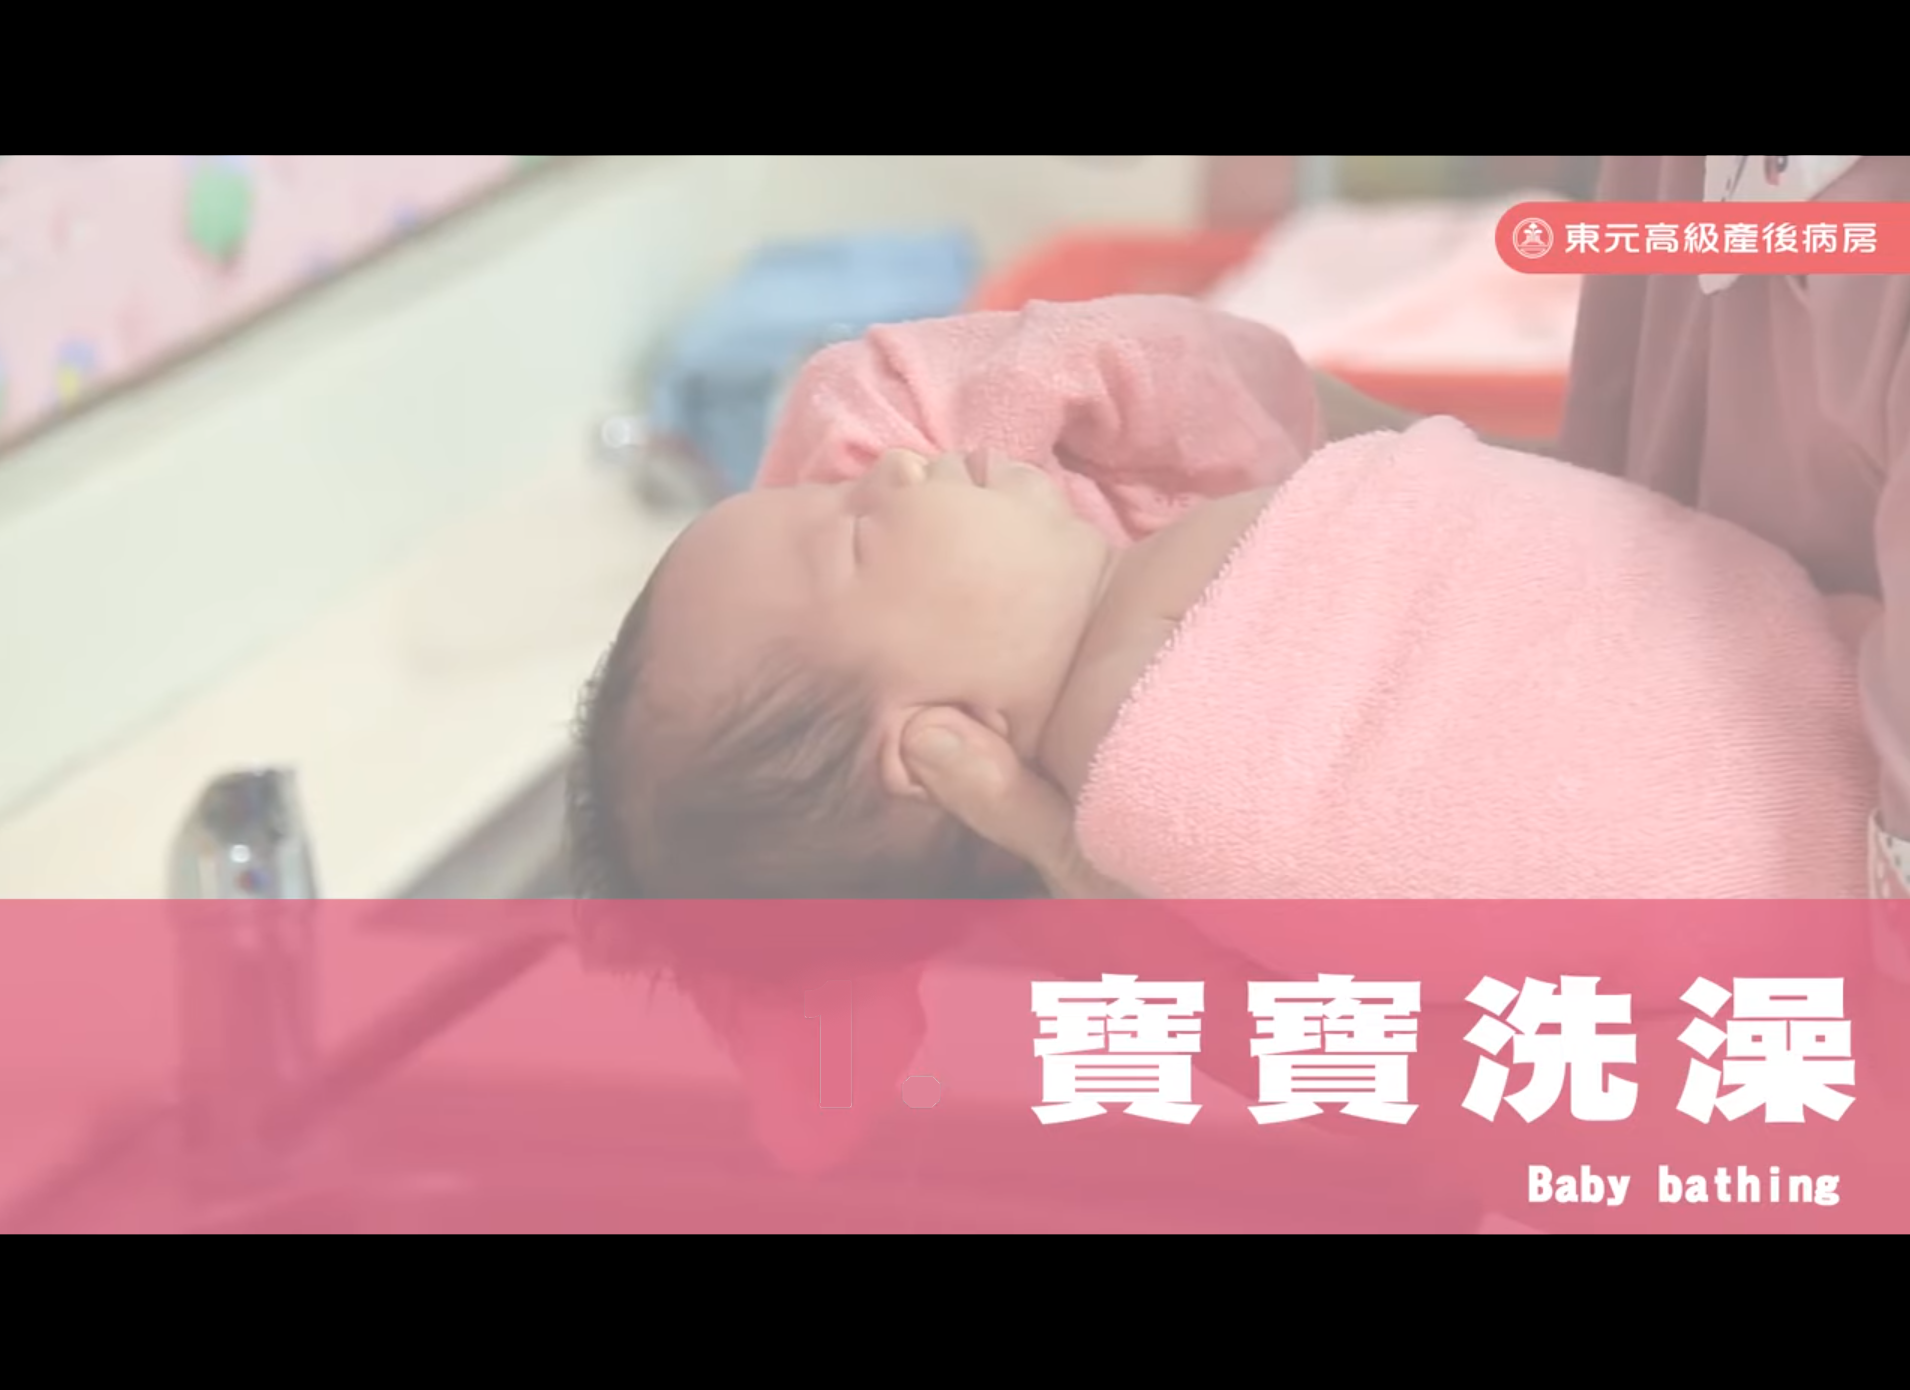 新手爸媽看這邊!! 如何幫寶寶洗澡?「寶寶洗澡注意事項」-東元綜合醫院